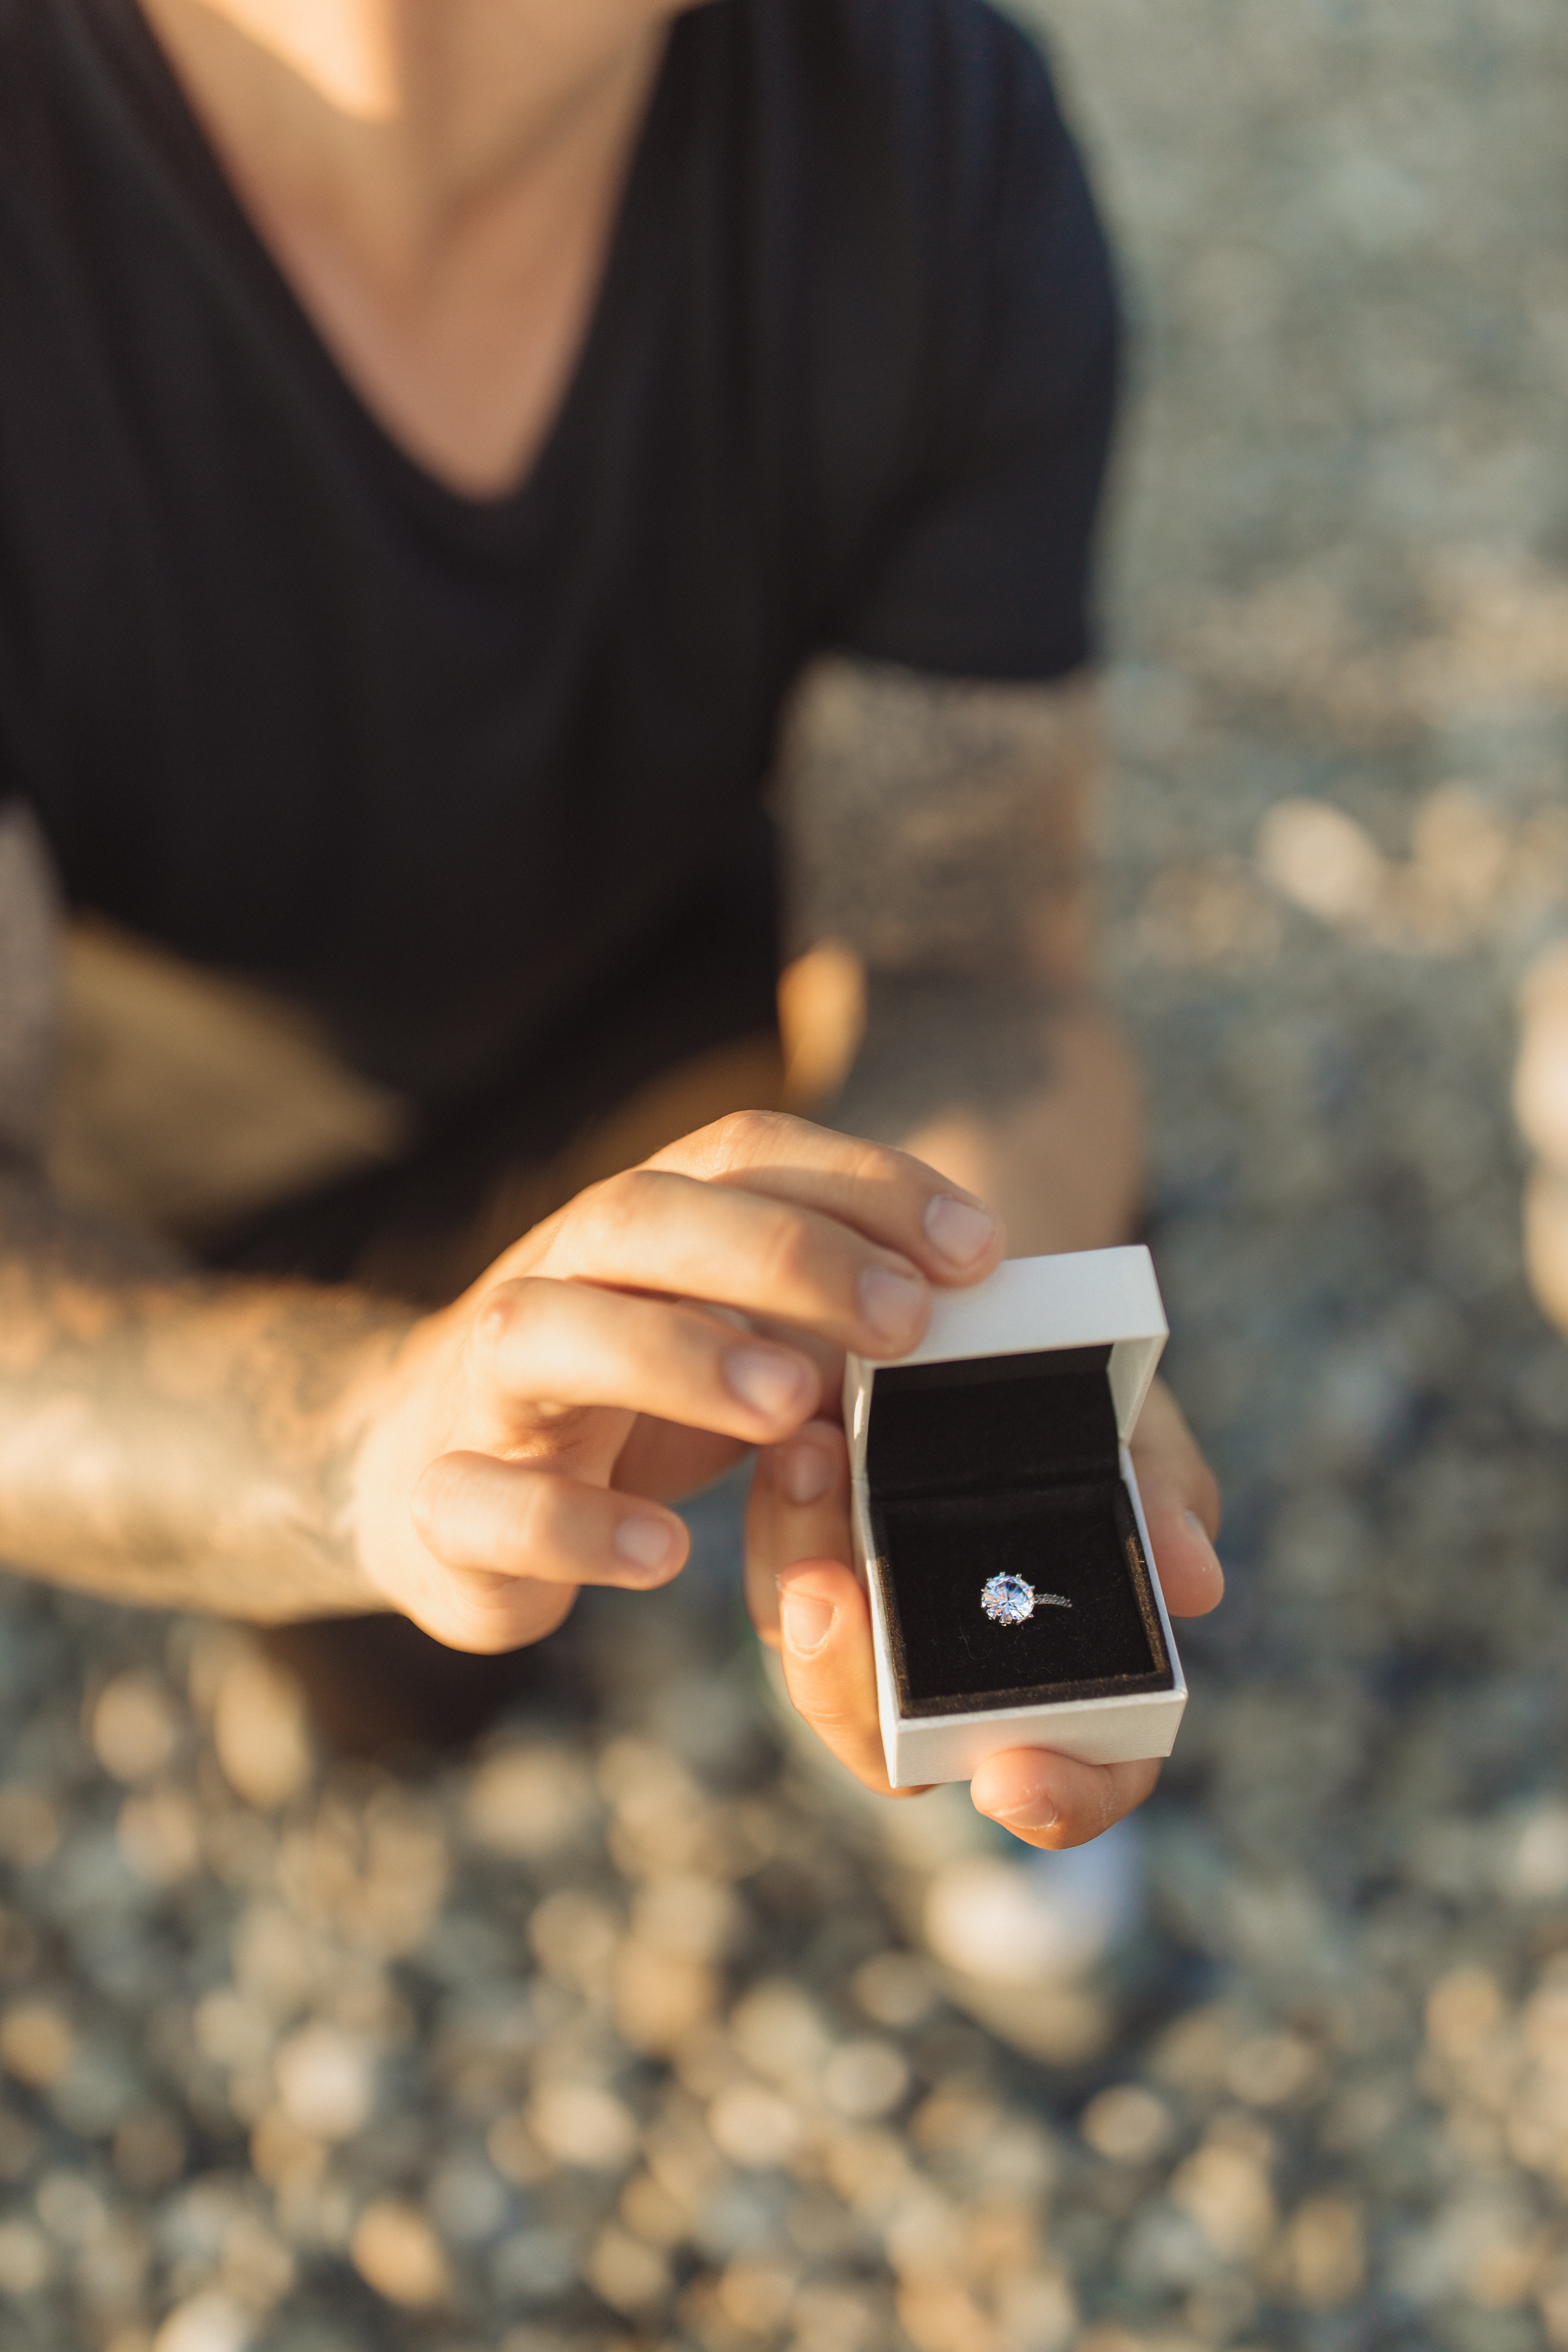 A man proposing. | Source: Pexels